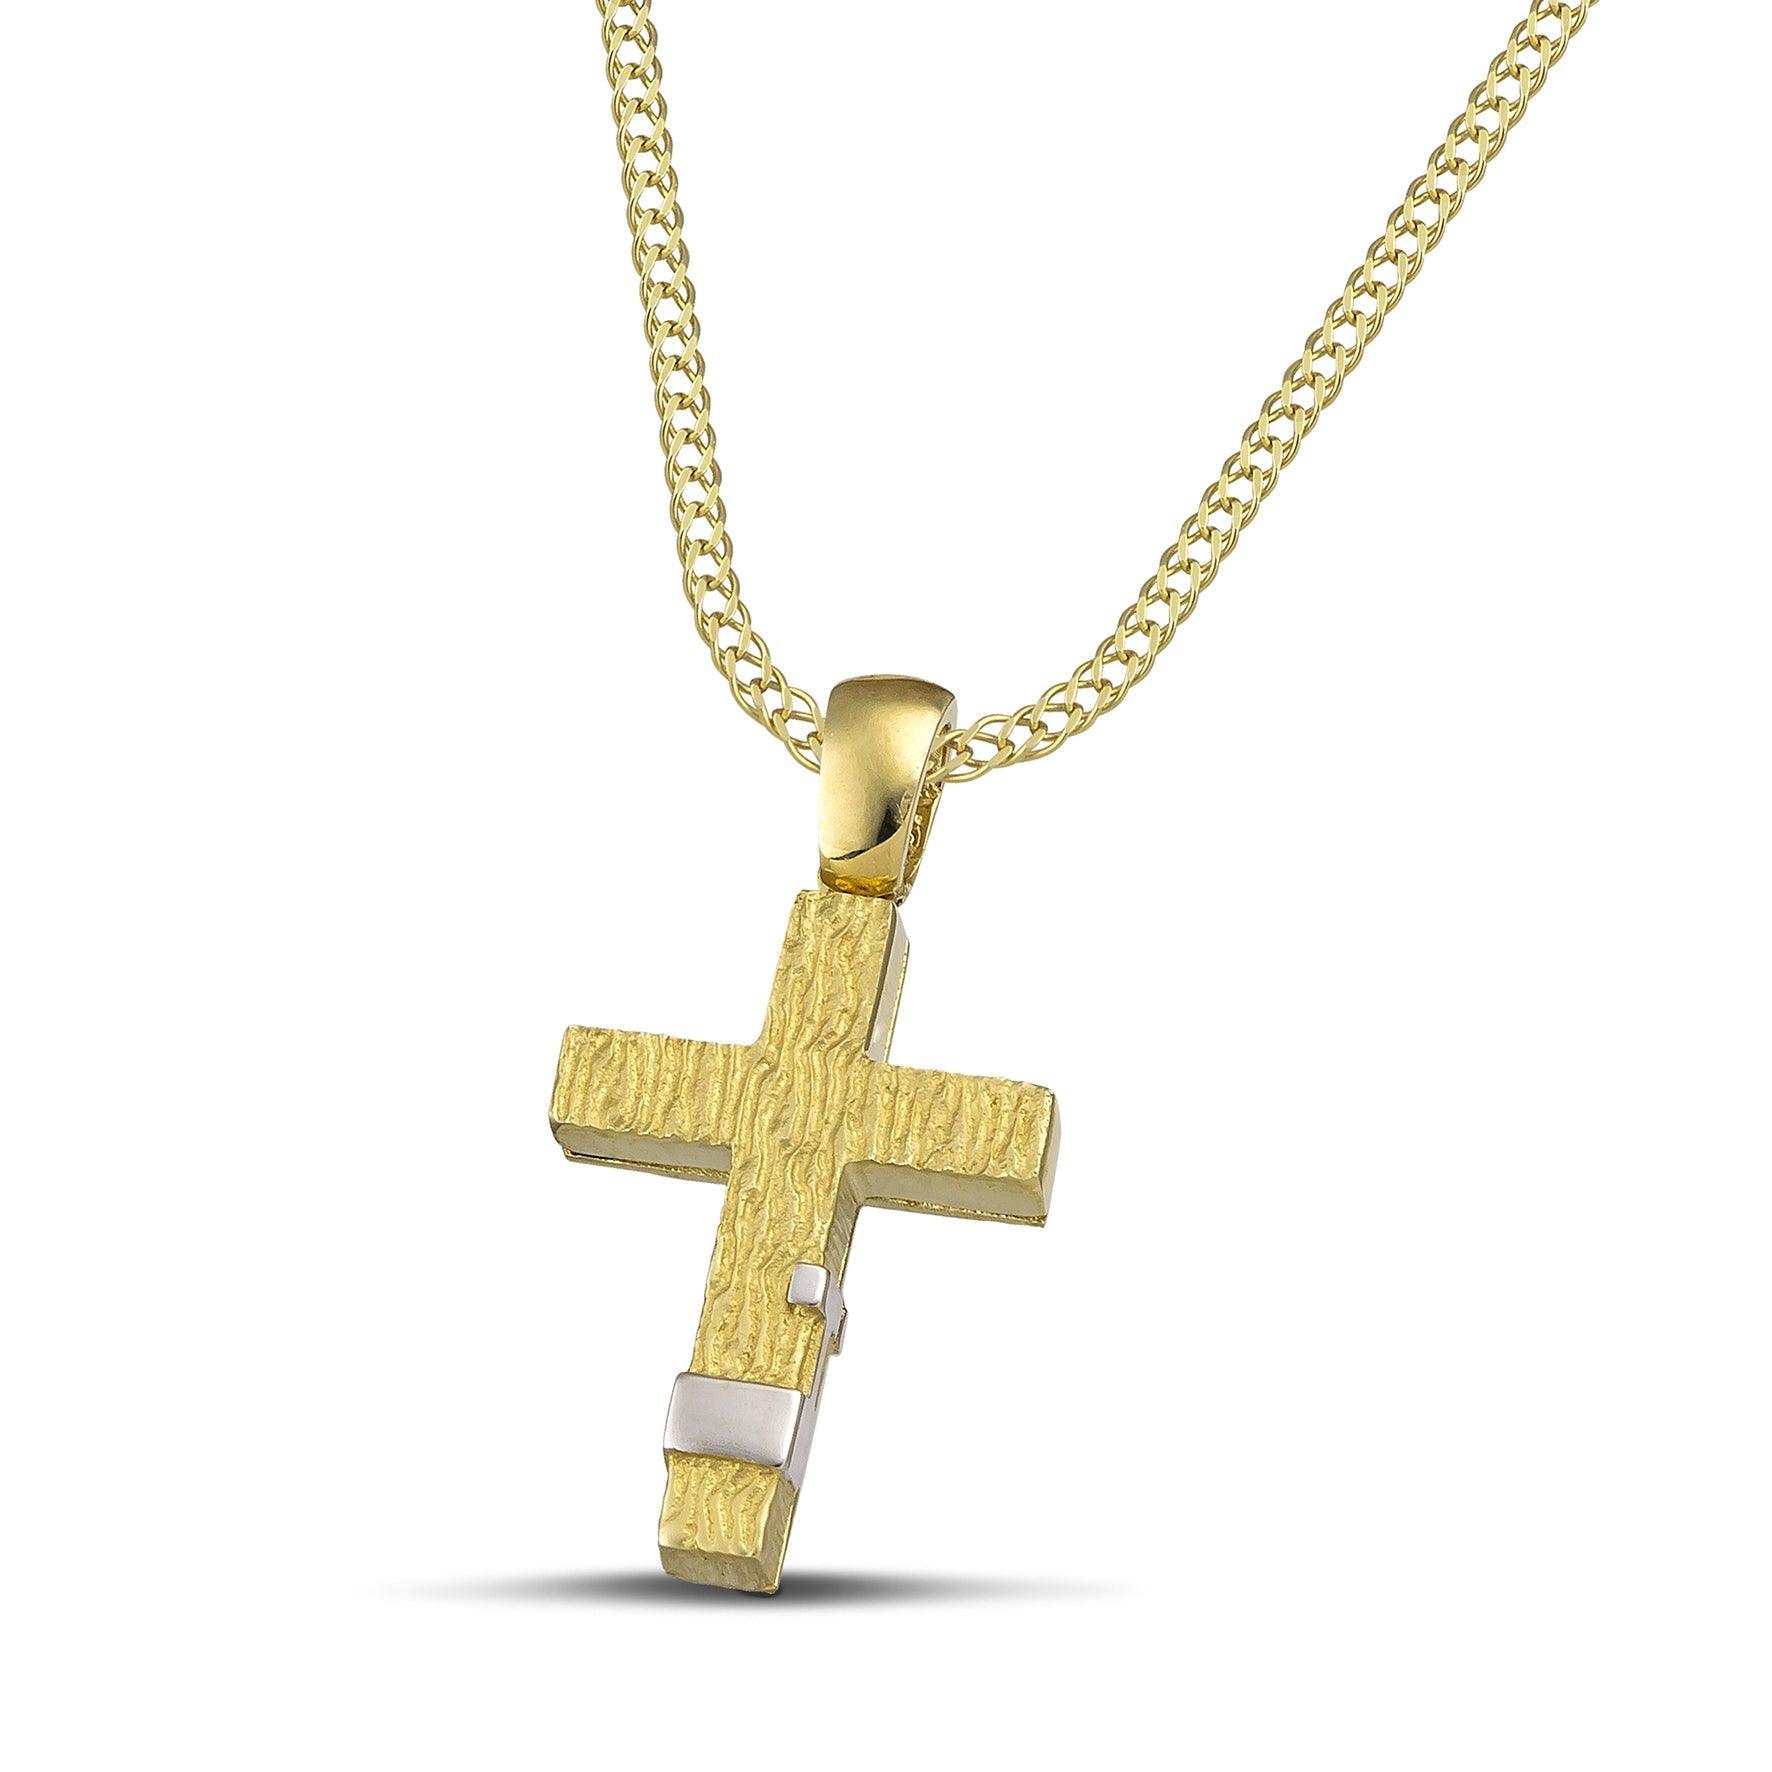 Μοντέρνος βαπτιστικός σταυρός για αγόρι από χρυσό Κ14. Πιστοποιημένη χειροποίηση κατασκευή, φορεμένη σε φαρδιά αλυσίδα.